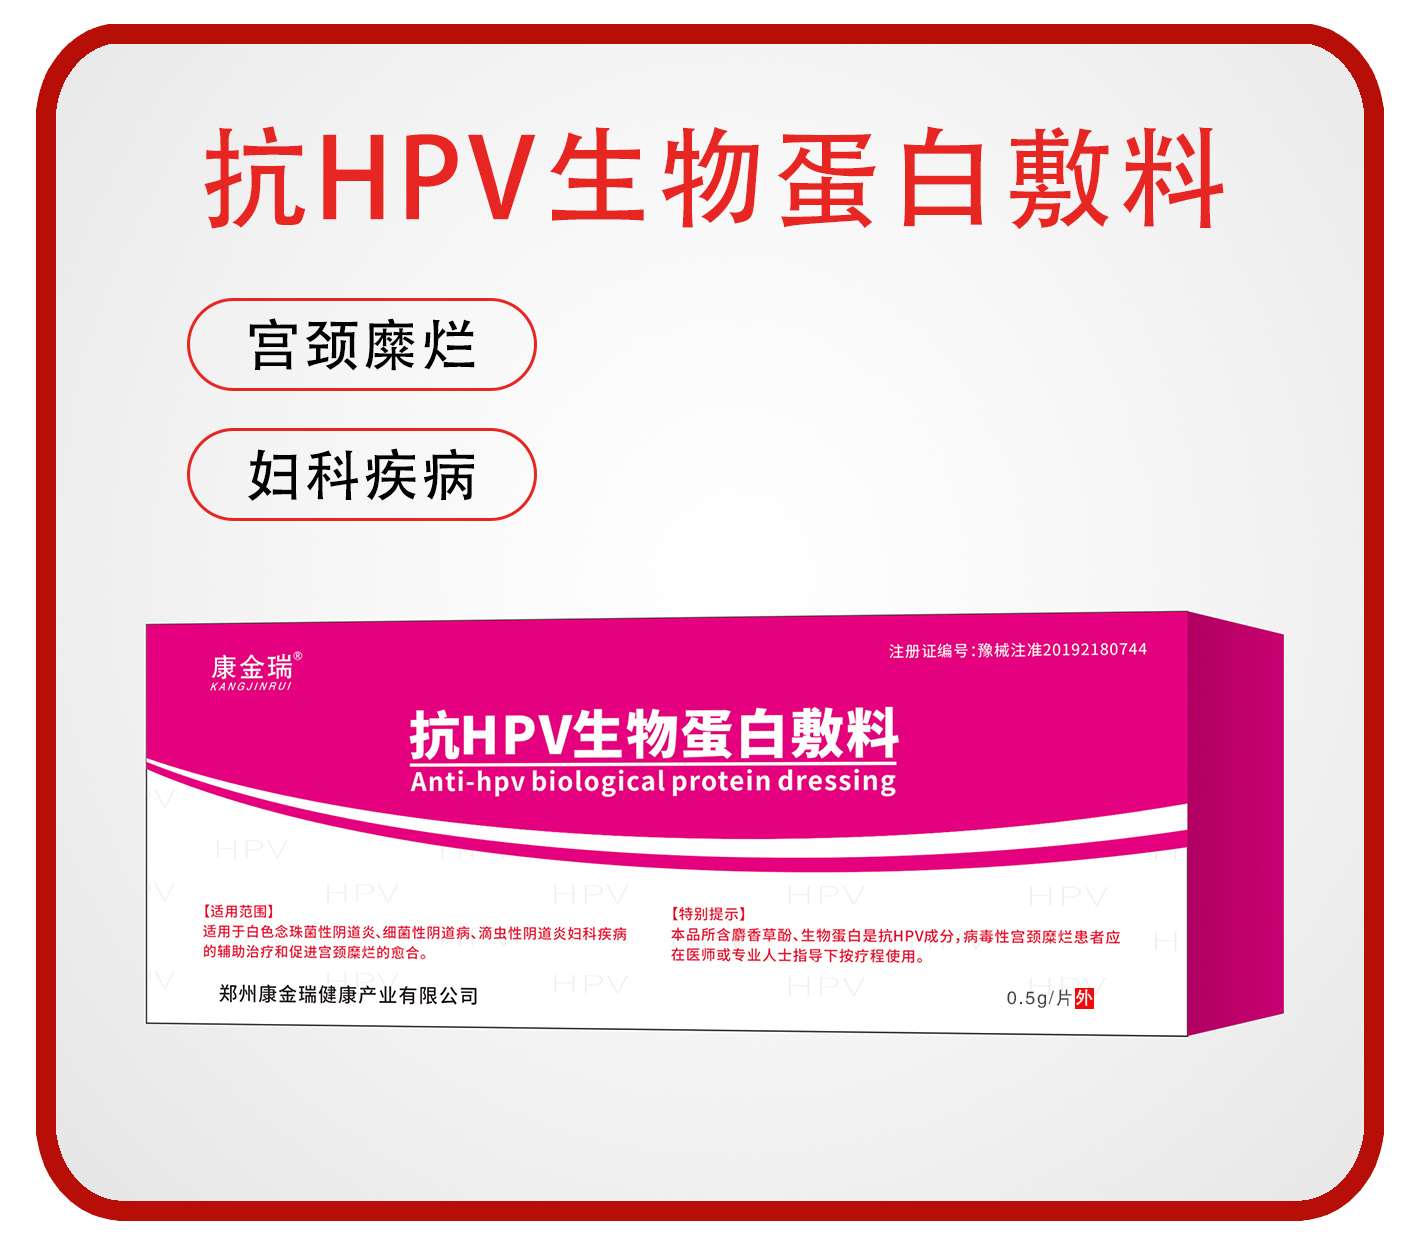  抗HPV生物蛋白敷料